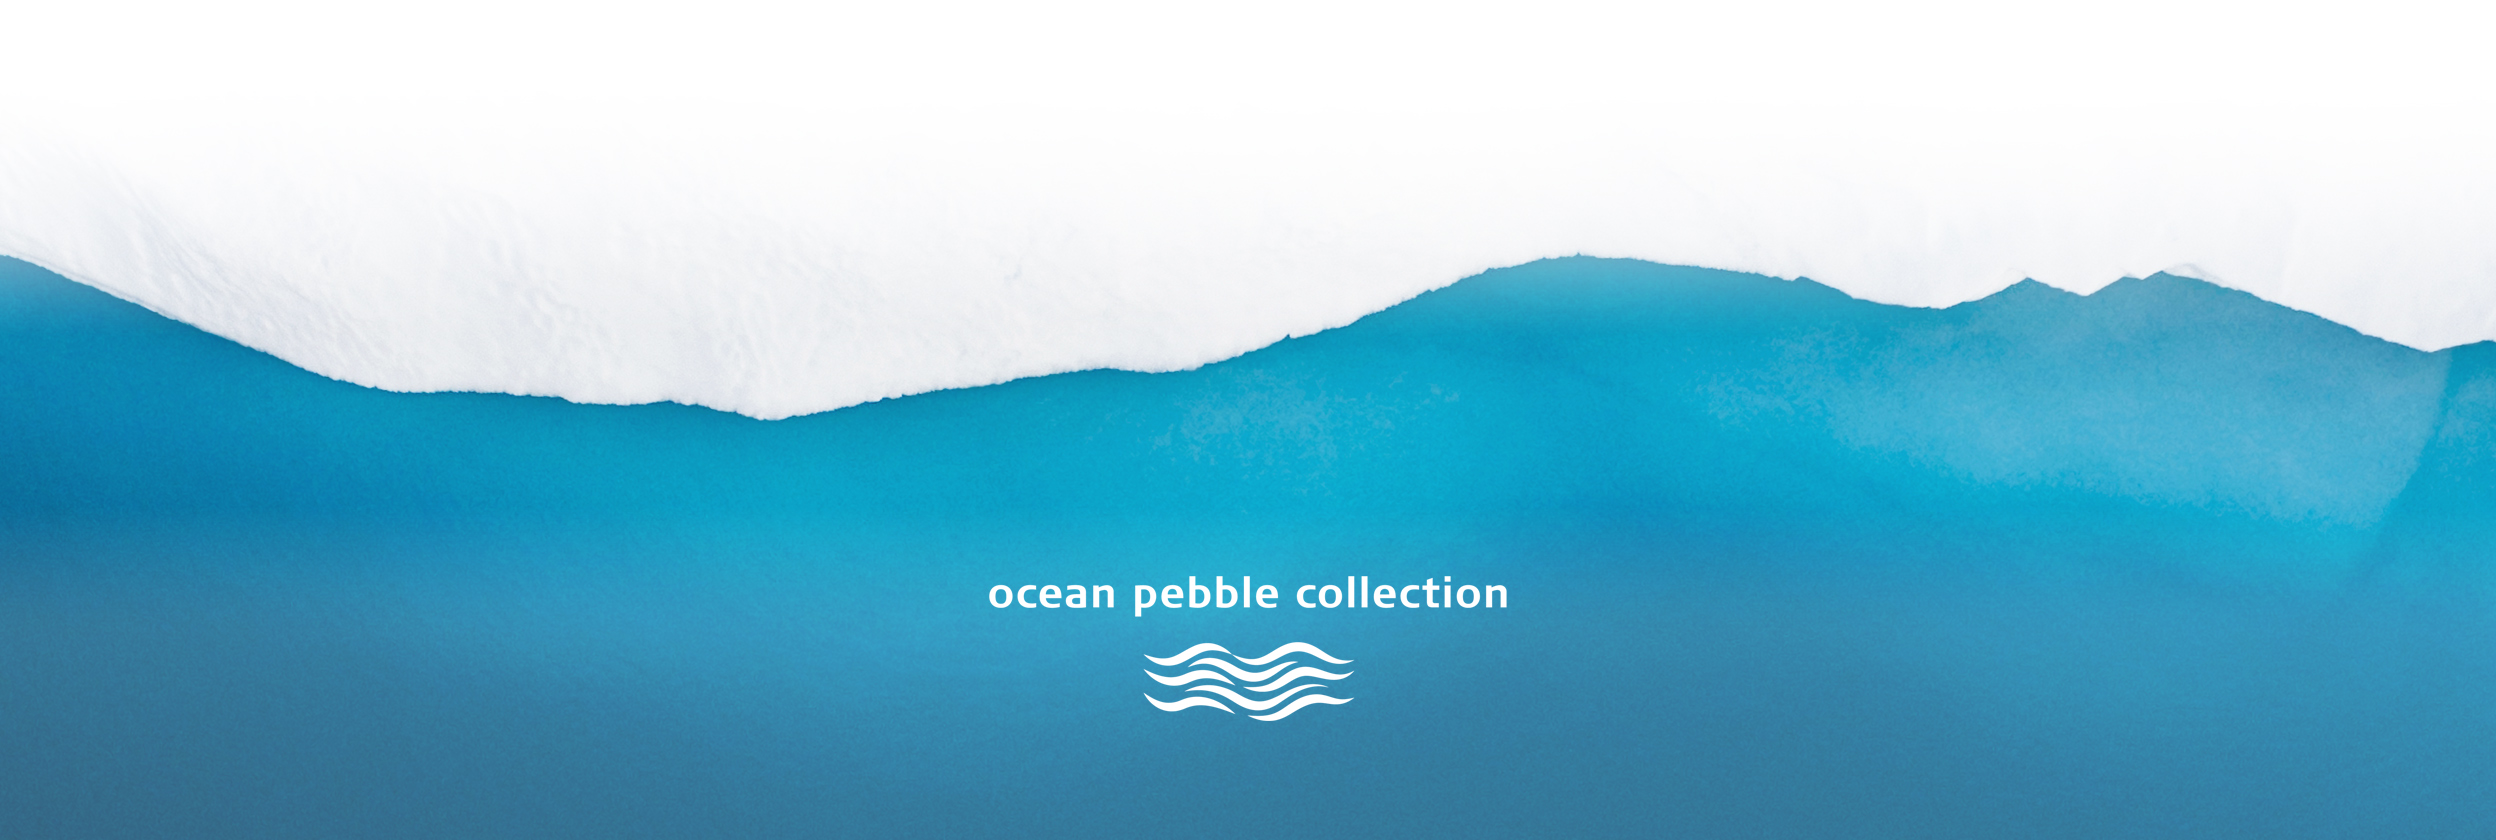 ocean pebble